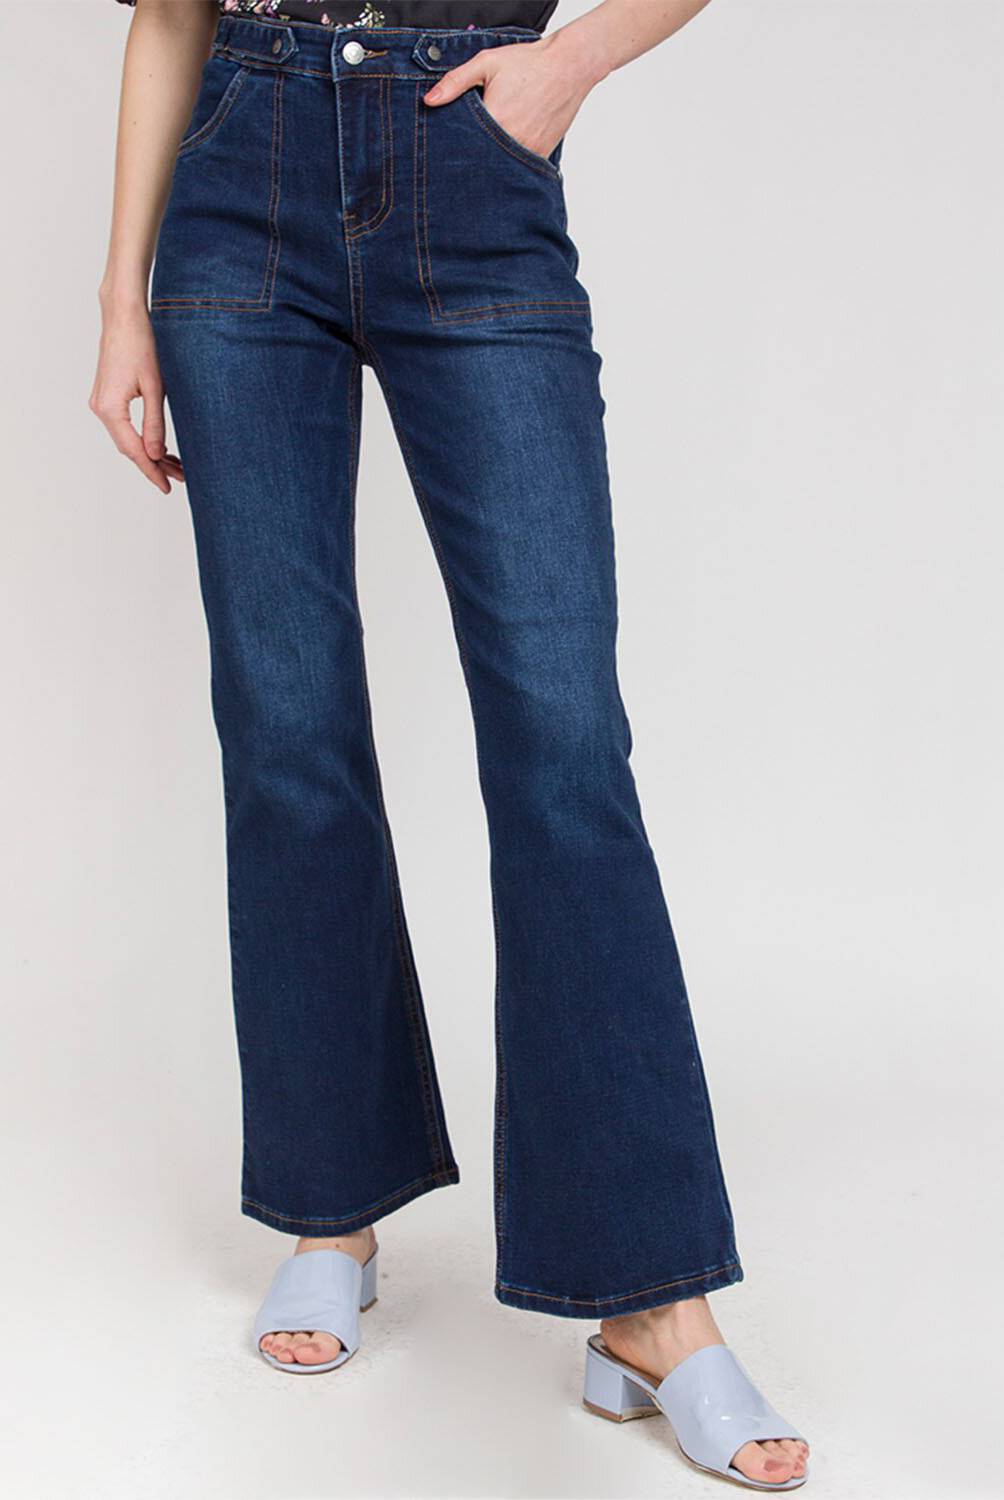 IO - Jeans De Algodón Mujer